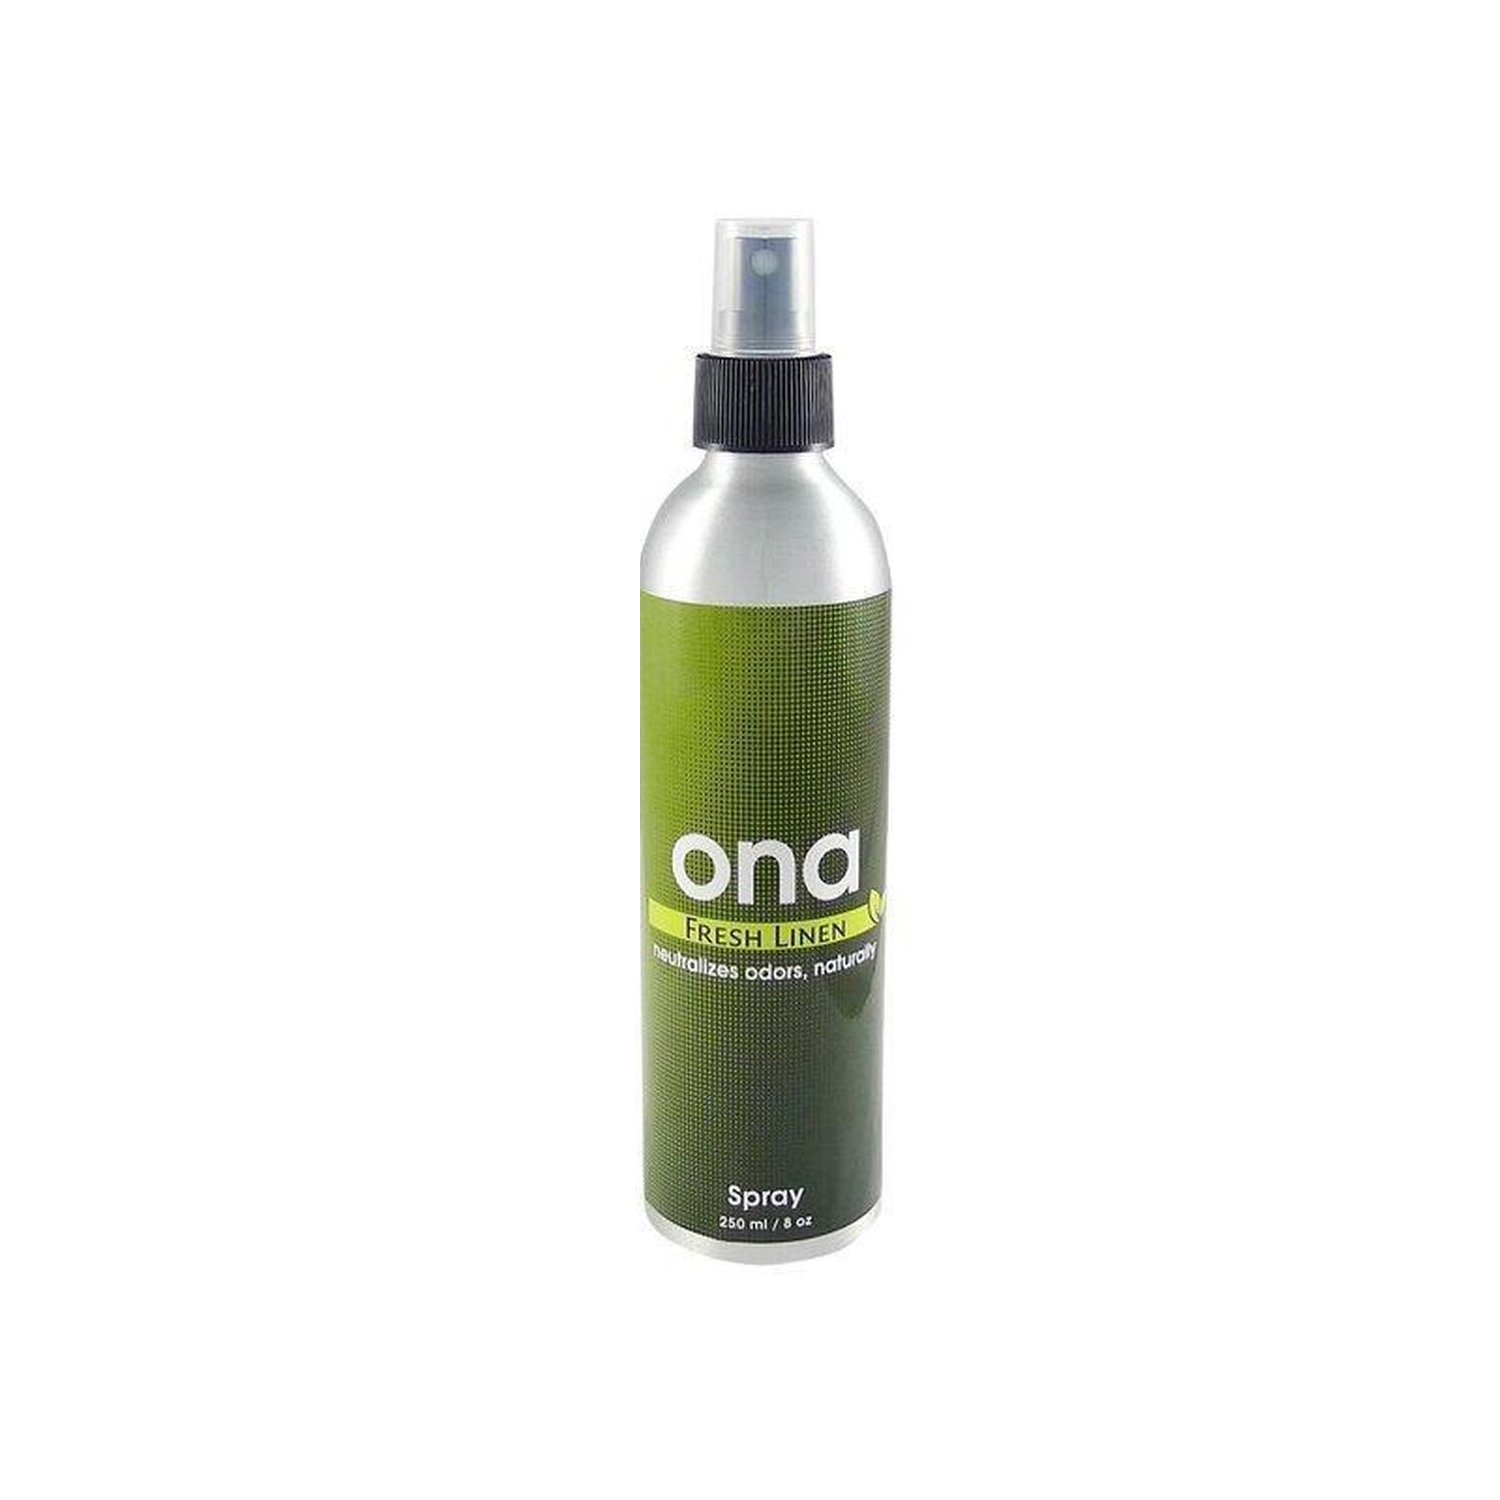 Ona Spray Fresh Linen unter Luft & Wasser > Geruchsneutralisierung